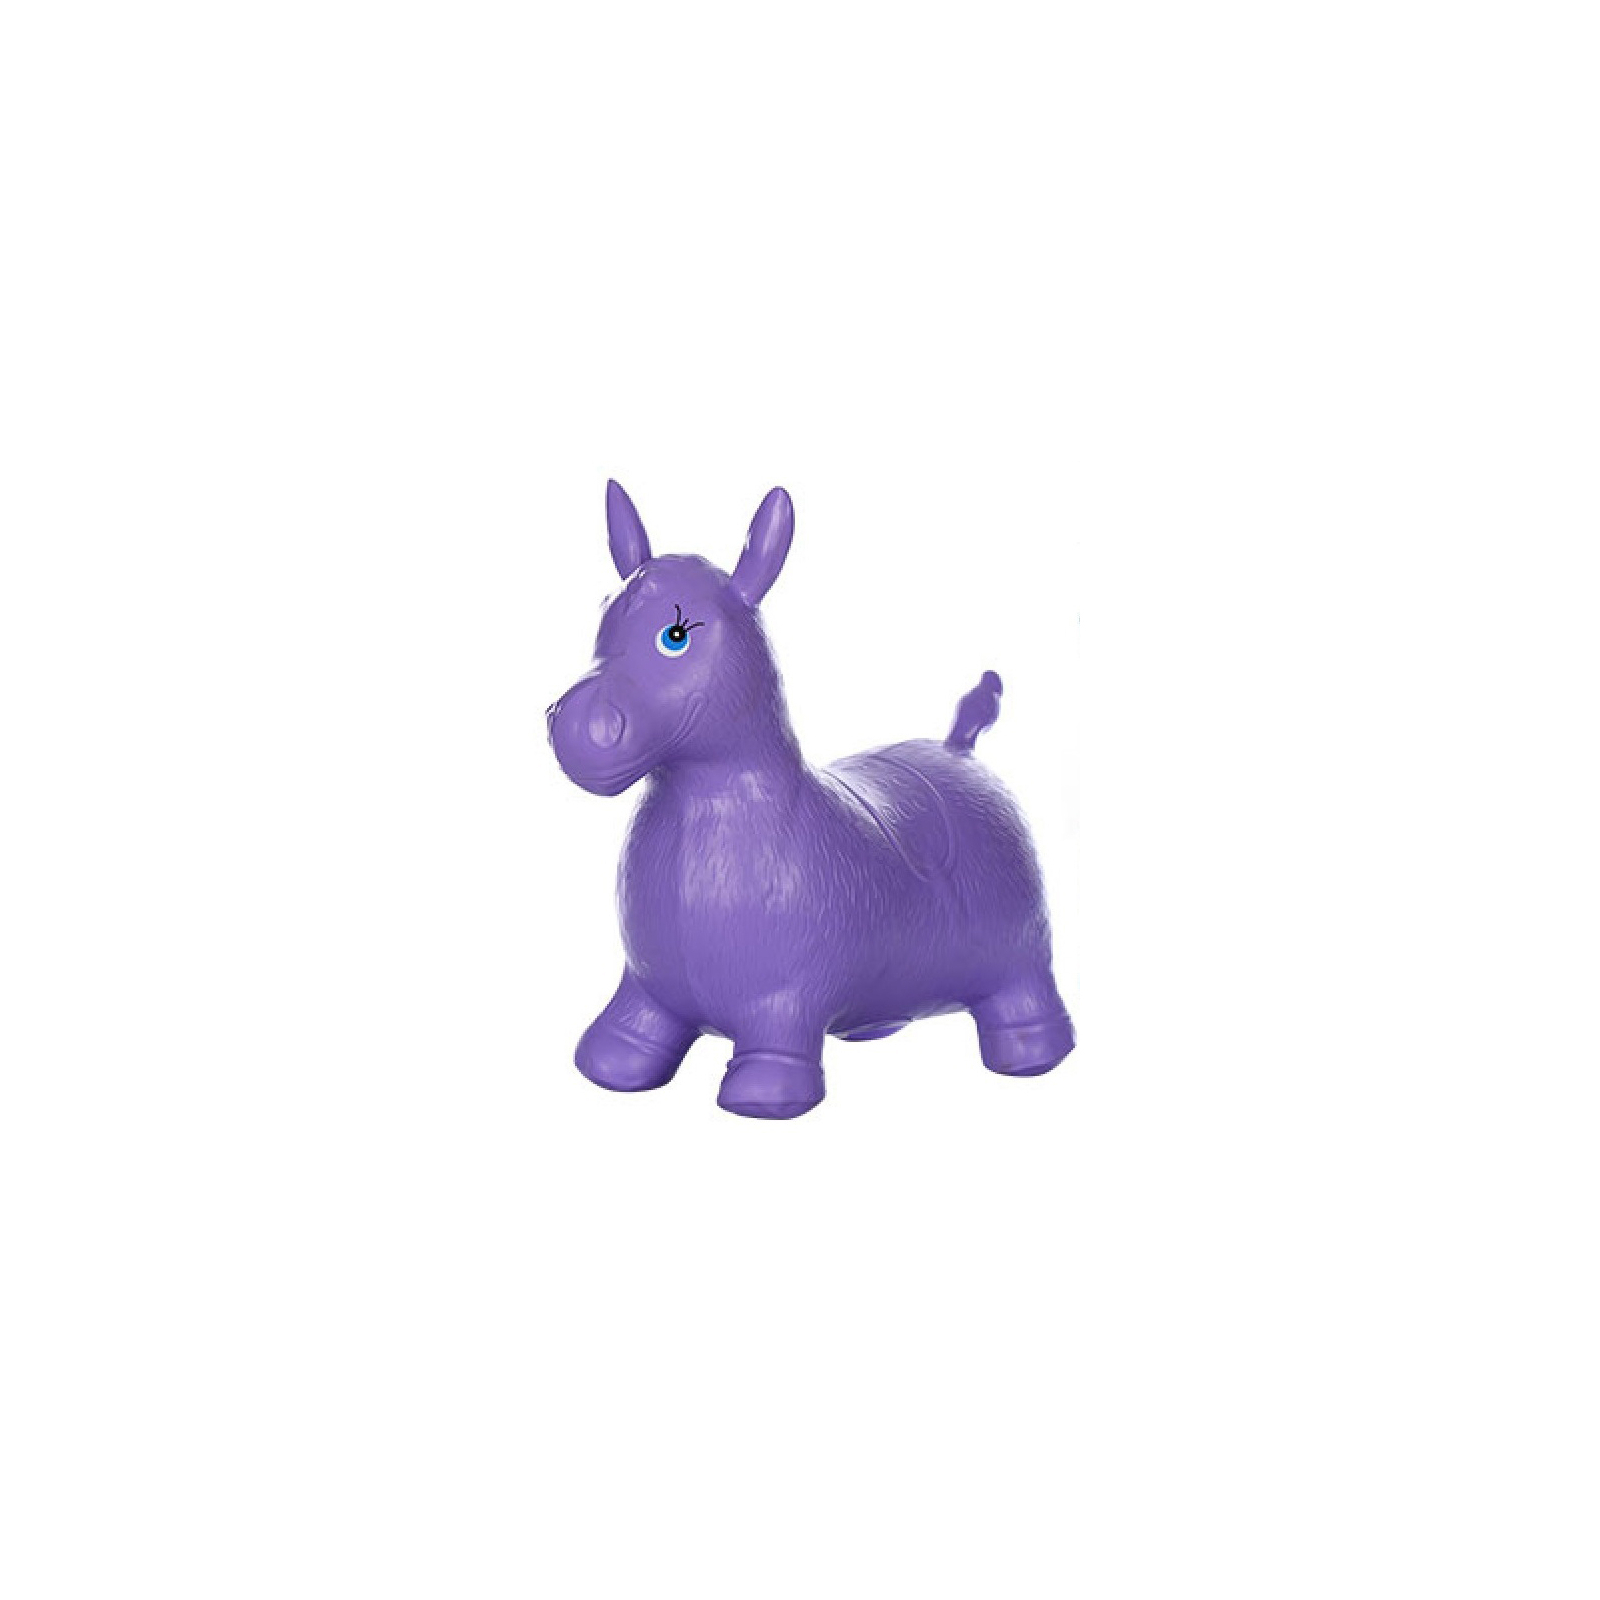 Попрыгун Limo Toy Попрыгун-ослик violet (MS 0737 violet)